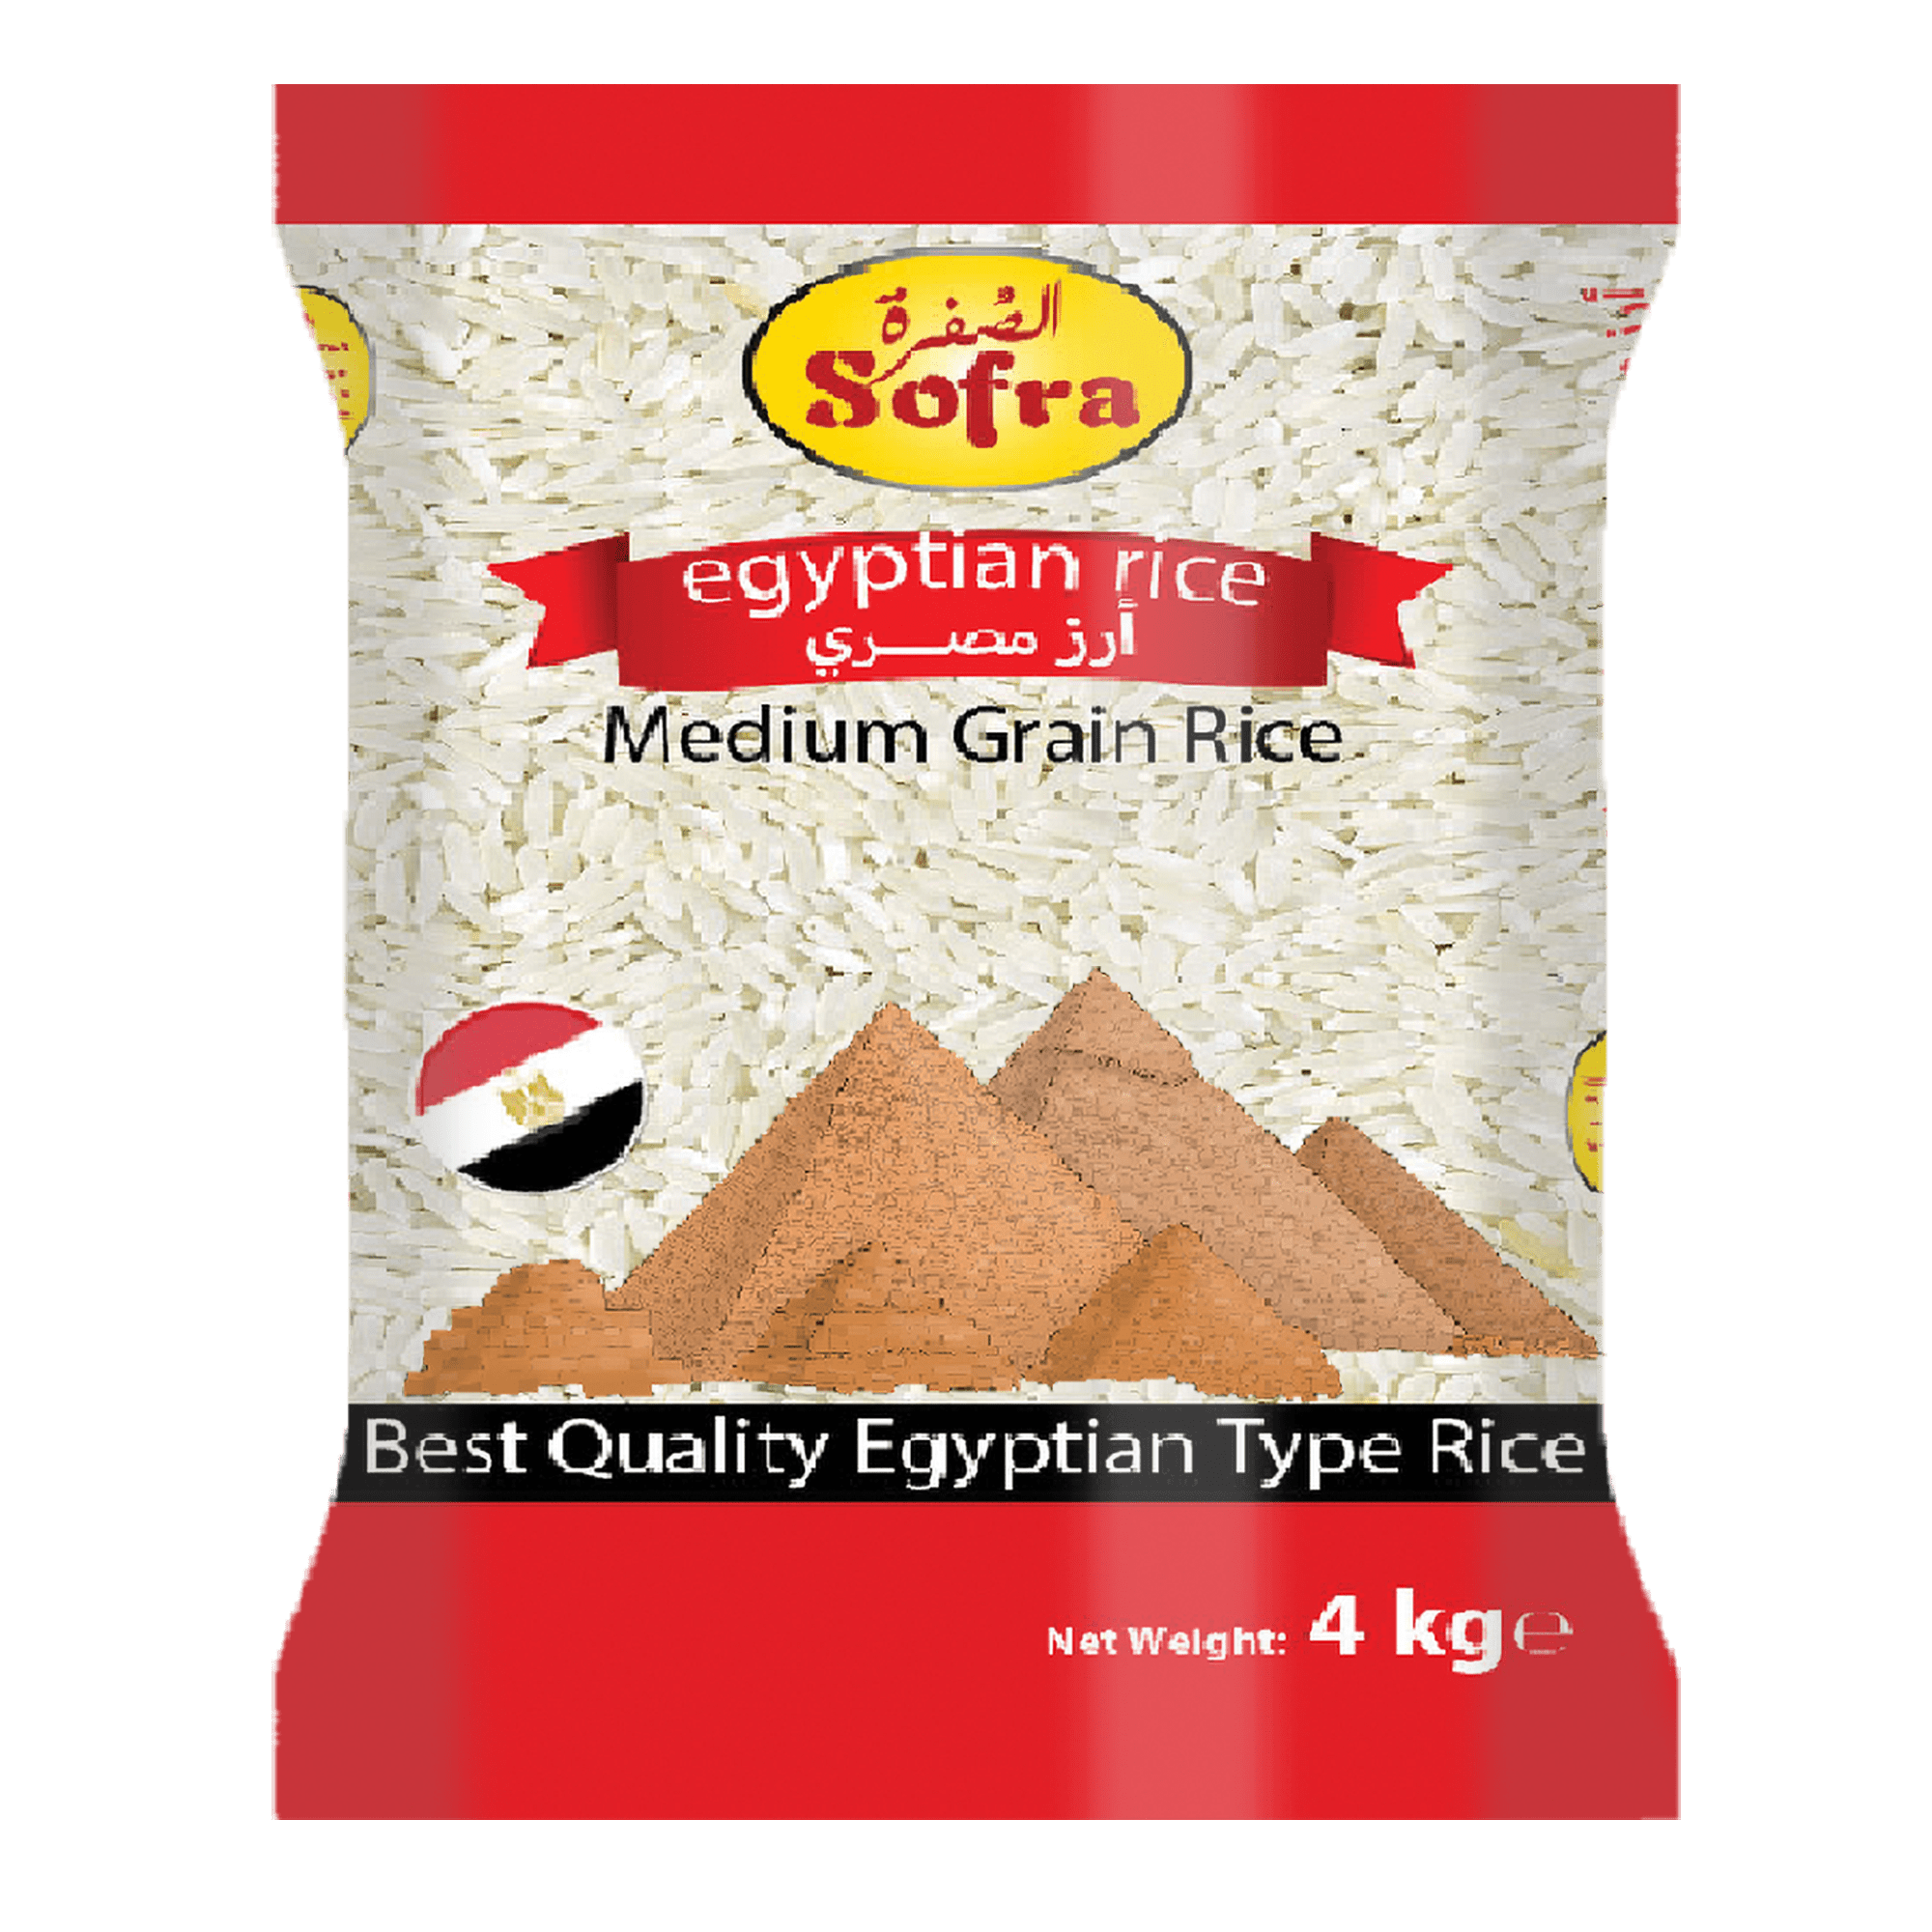 Egyptian Rice Medium Grain Rice Sofra 4kg